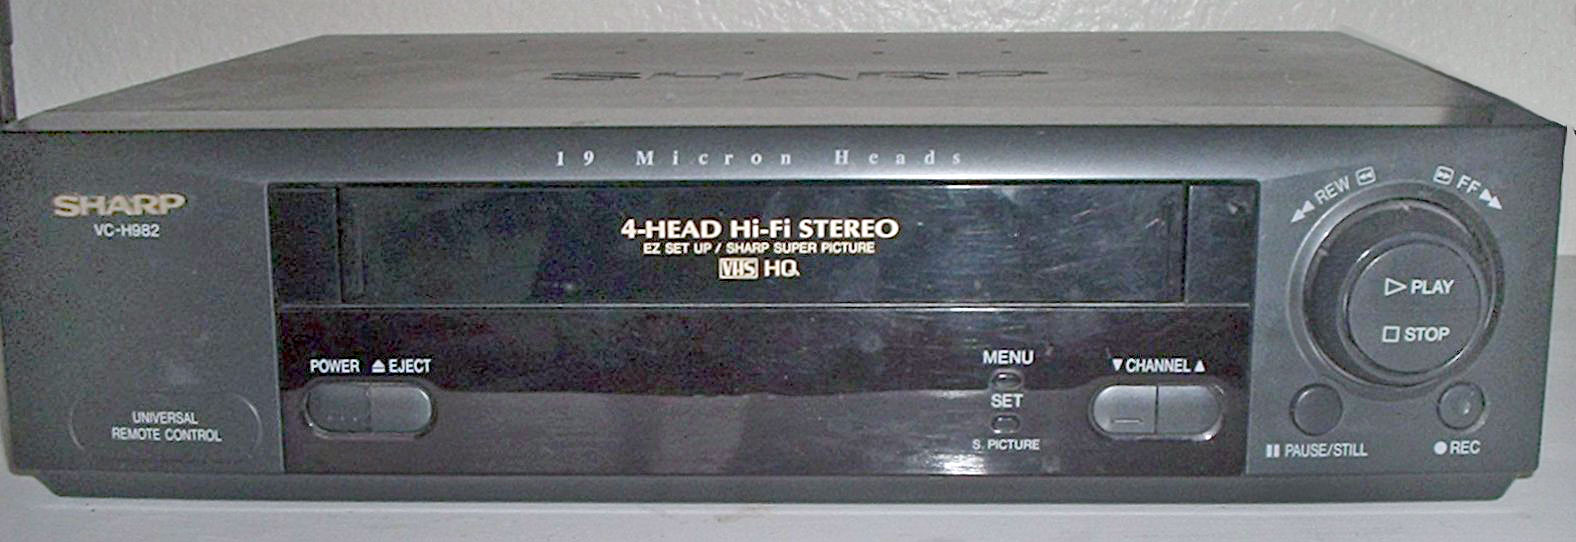 Sharp_VC-H982_VHS_VCR.jpg